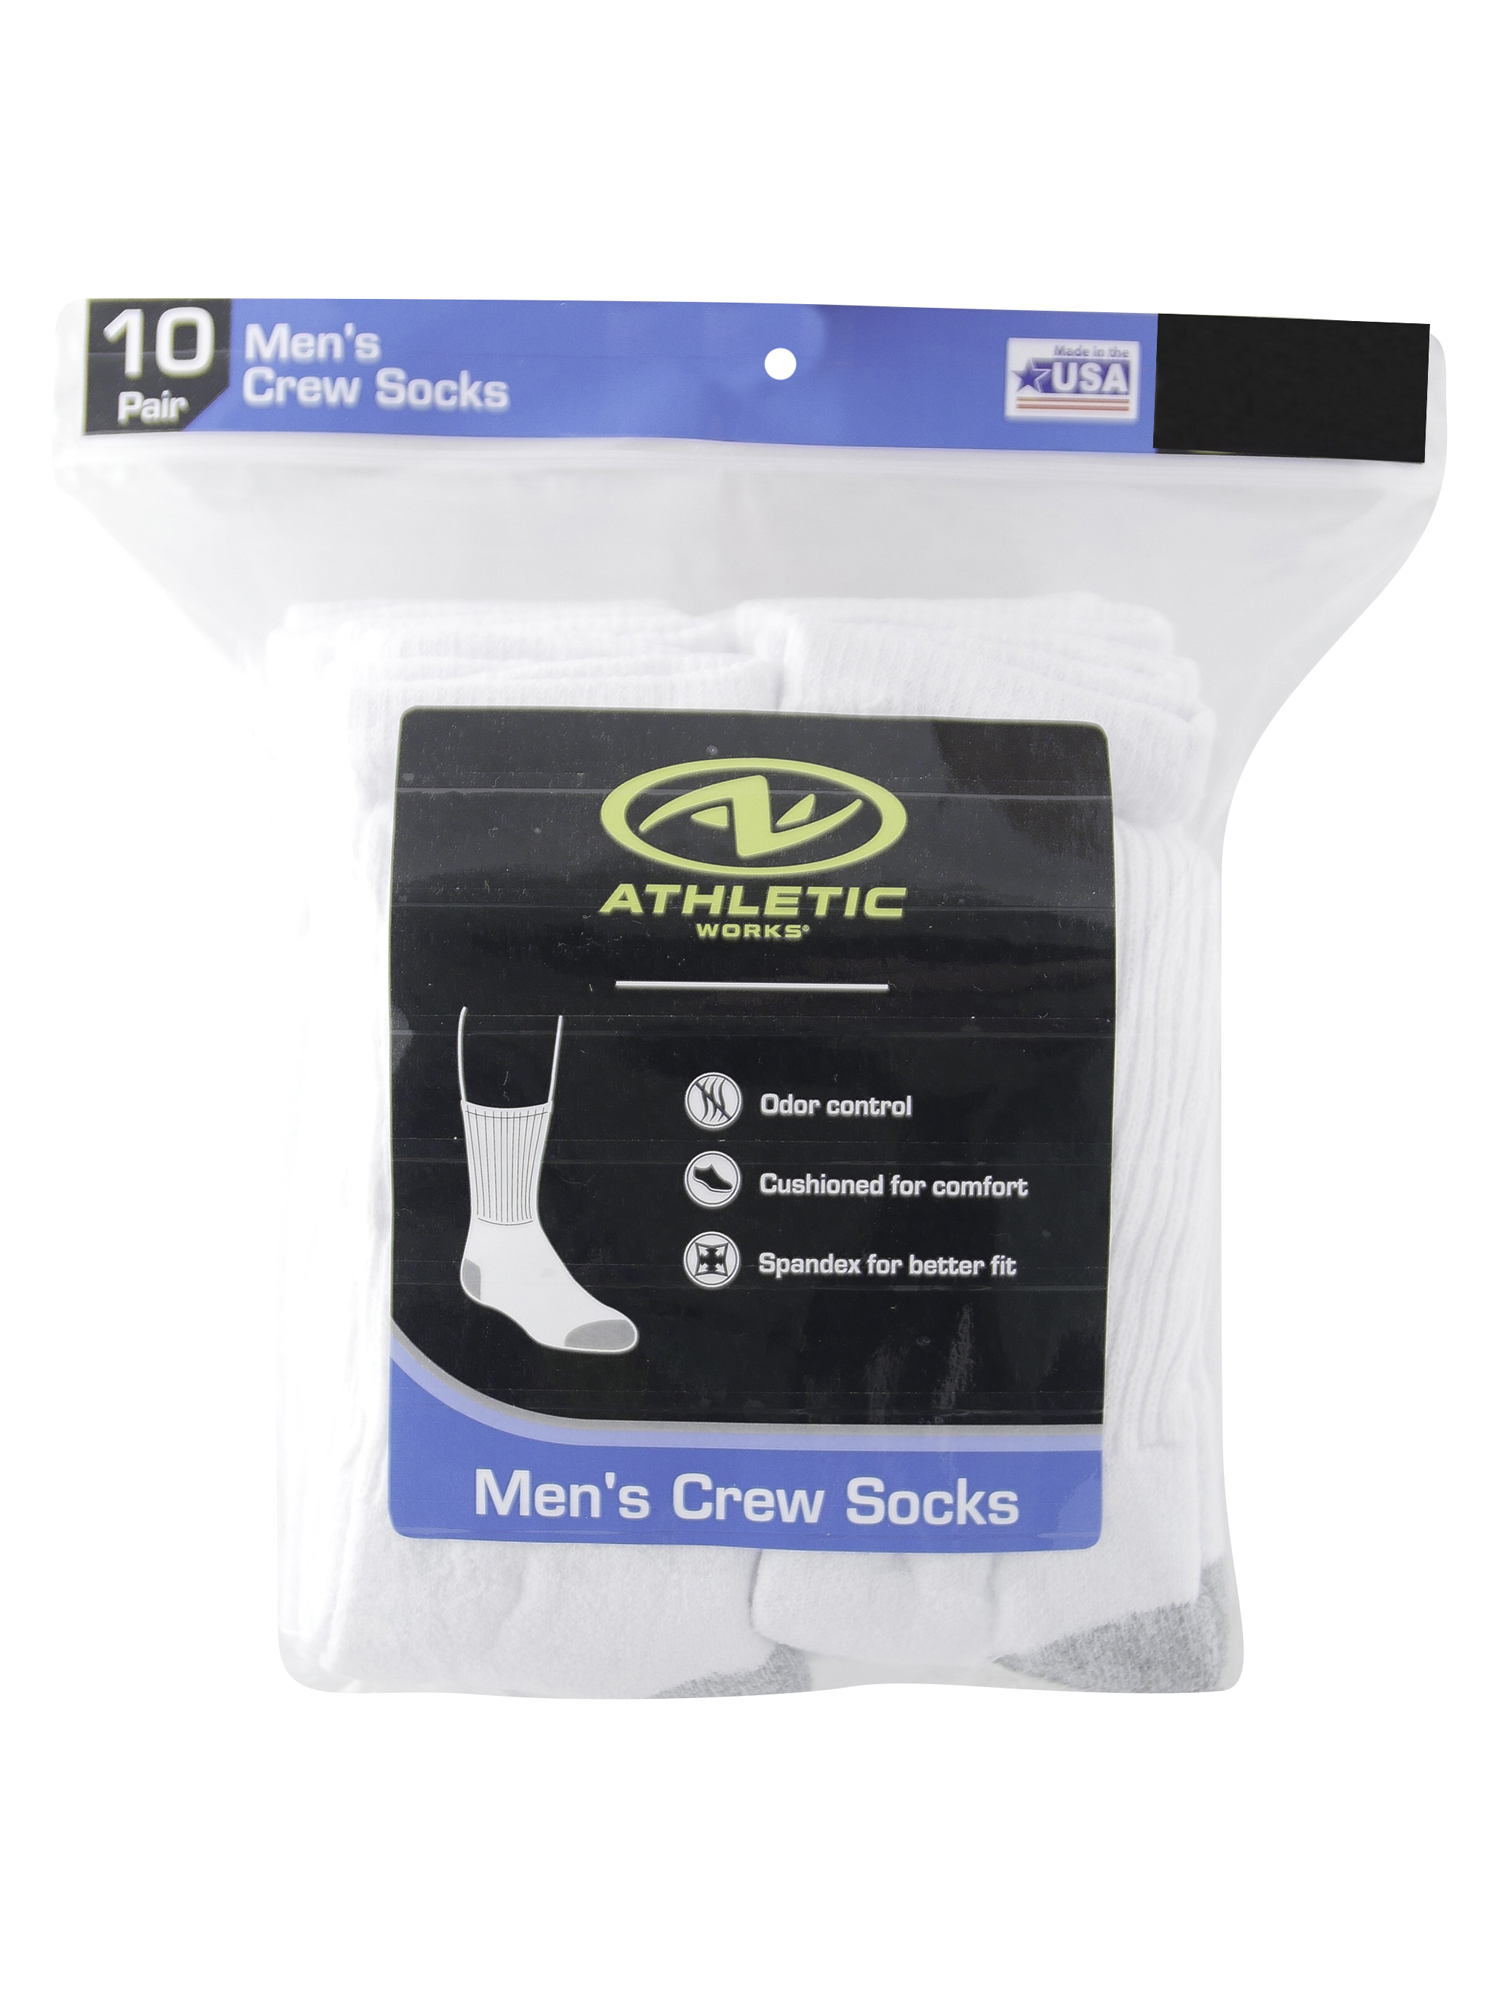 Men's Crew Socks 10-Pack - image 3 of 3